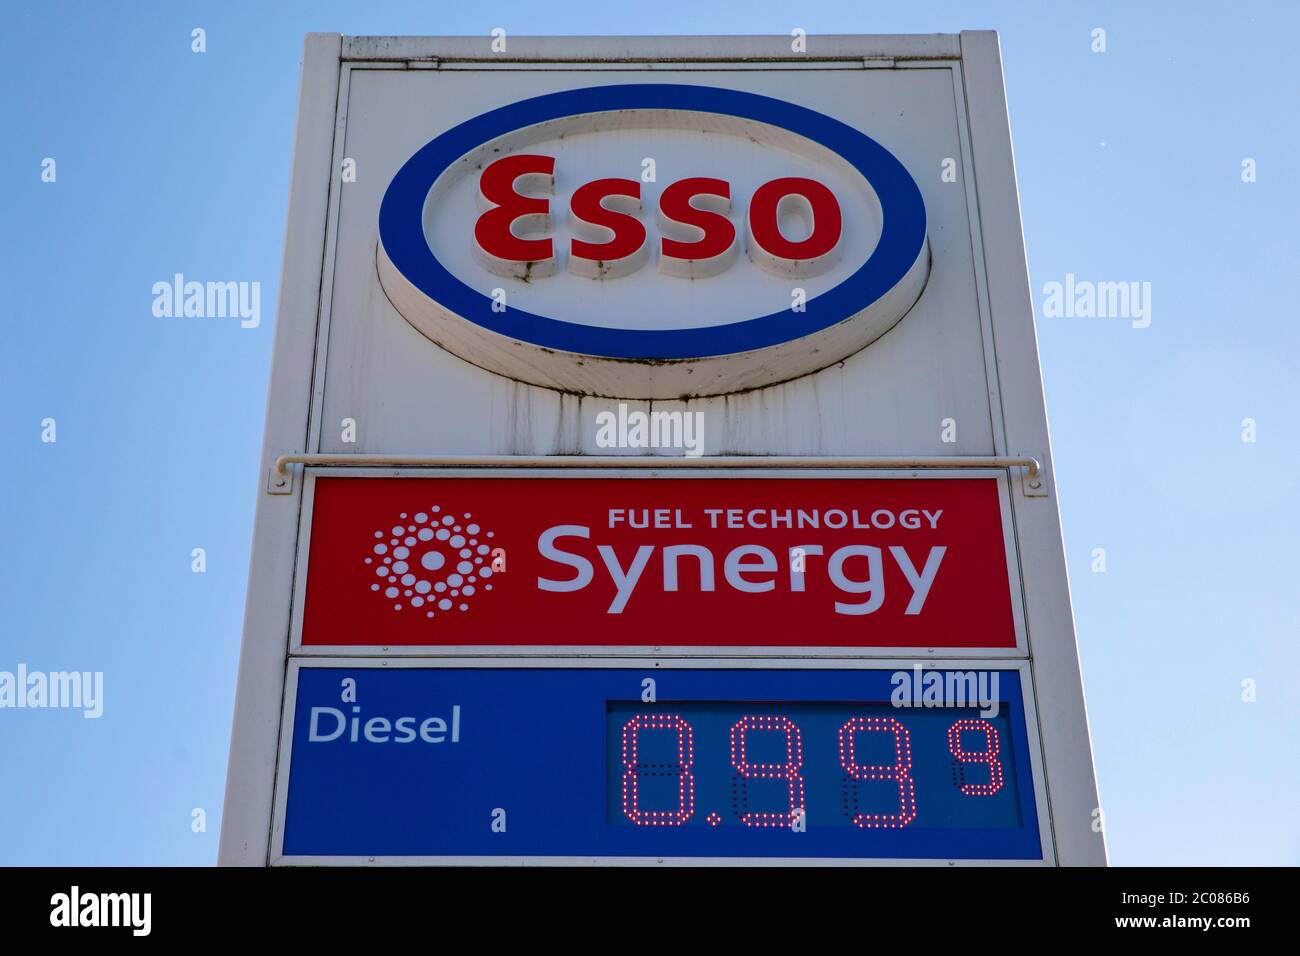 Corona-Pandemie: Diesel unter der 1 Euro-Marke. Günstige Spritpreise wie seit 2009 nicht mehr. Uhldingen, 22.04.2020 Foto Stock